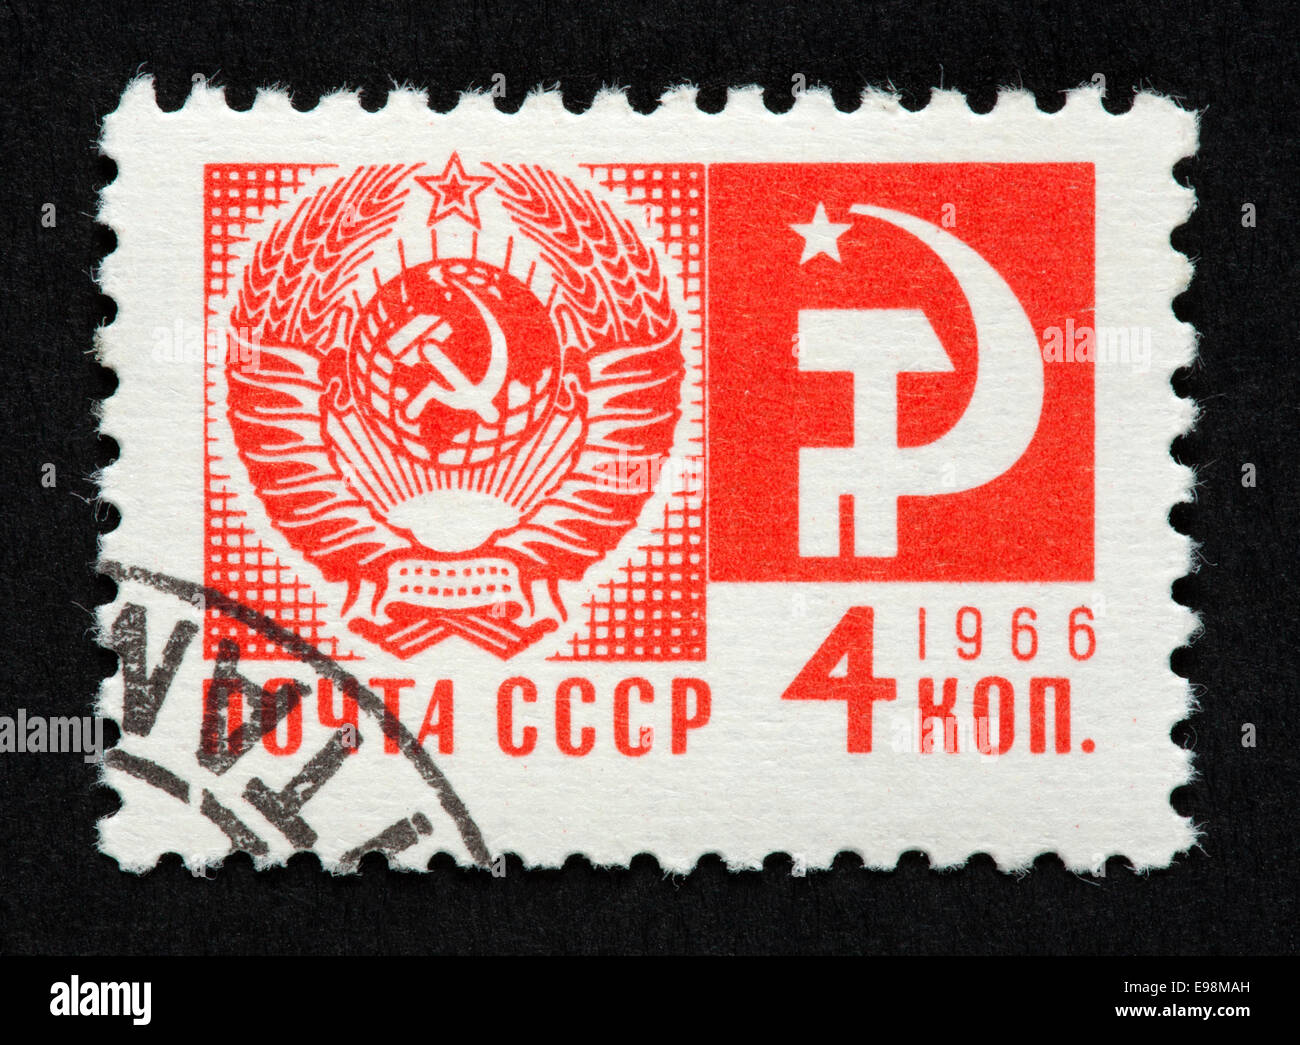 Timbre soviétique Banque D'Images